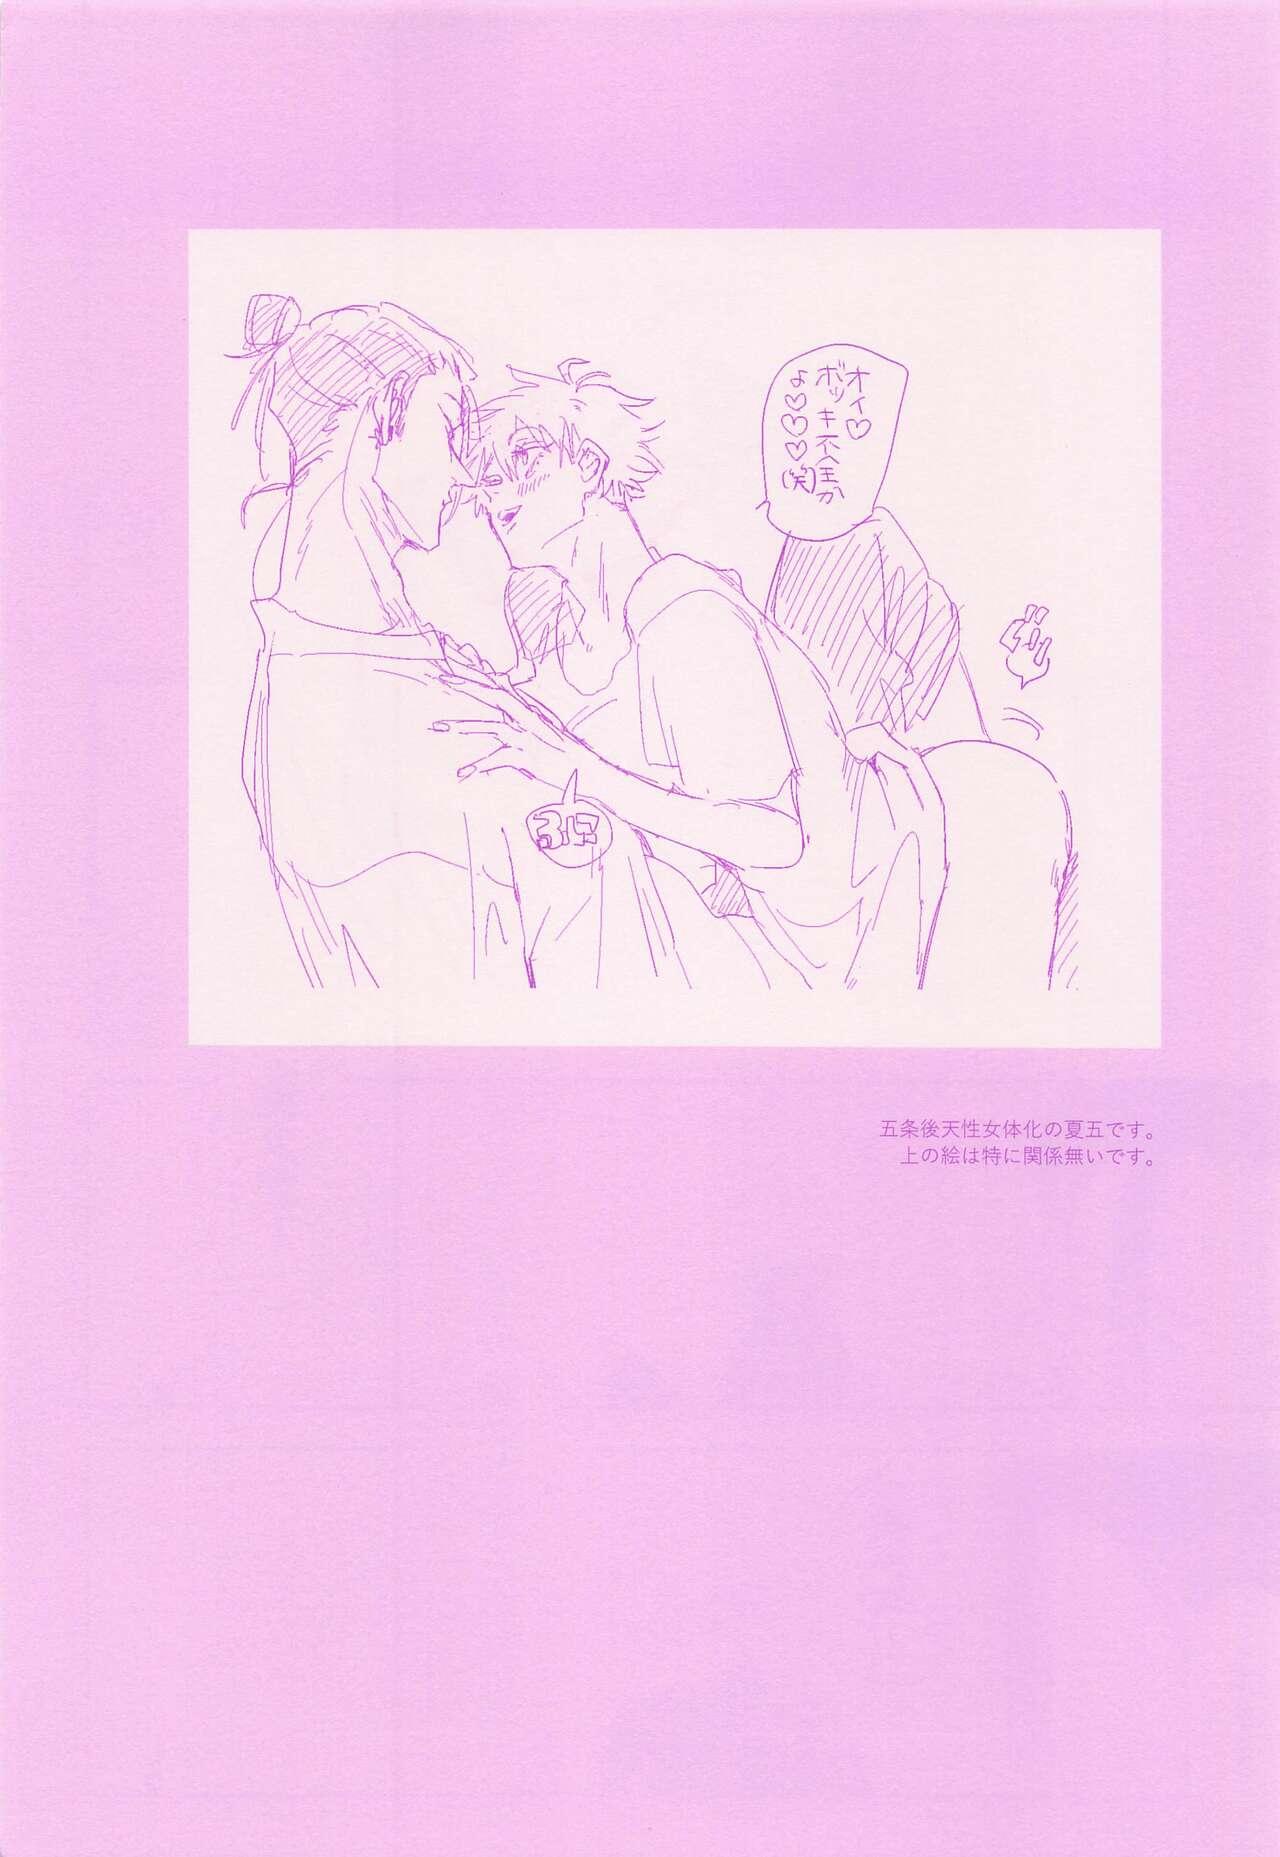 Facials hadaihizuba／who are yo？ - Jujutsu kaisen Skirt - Page 4